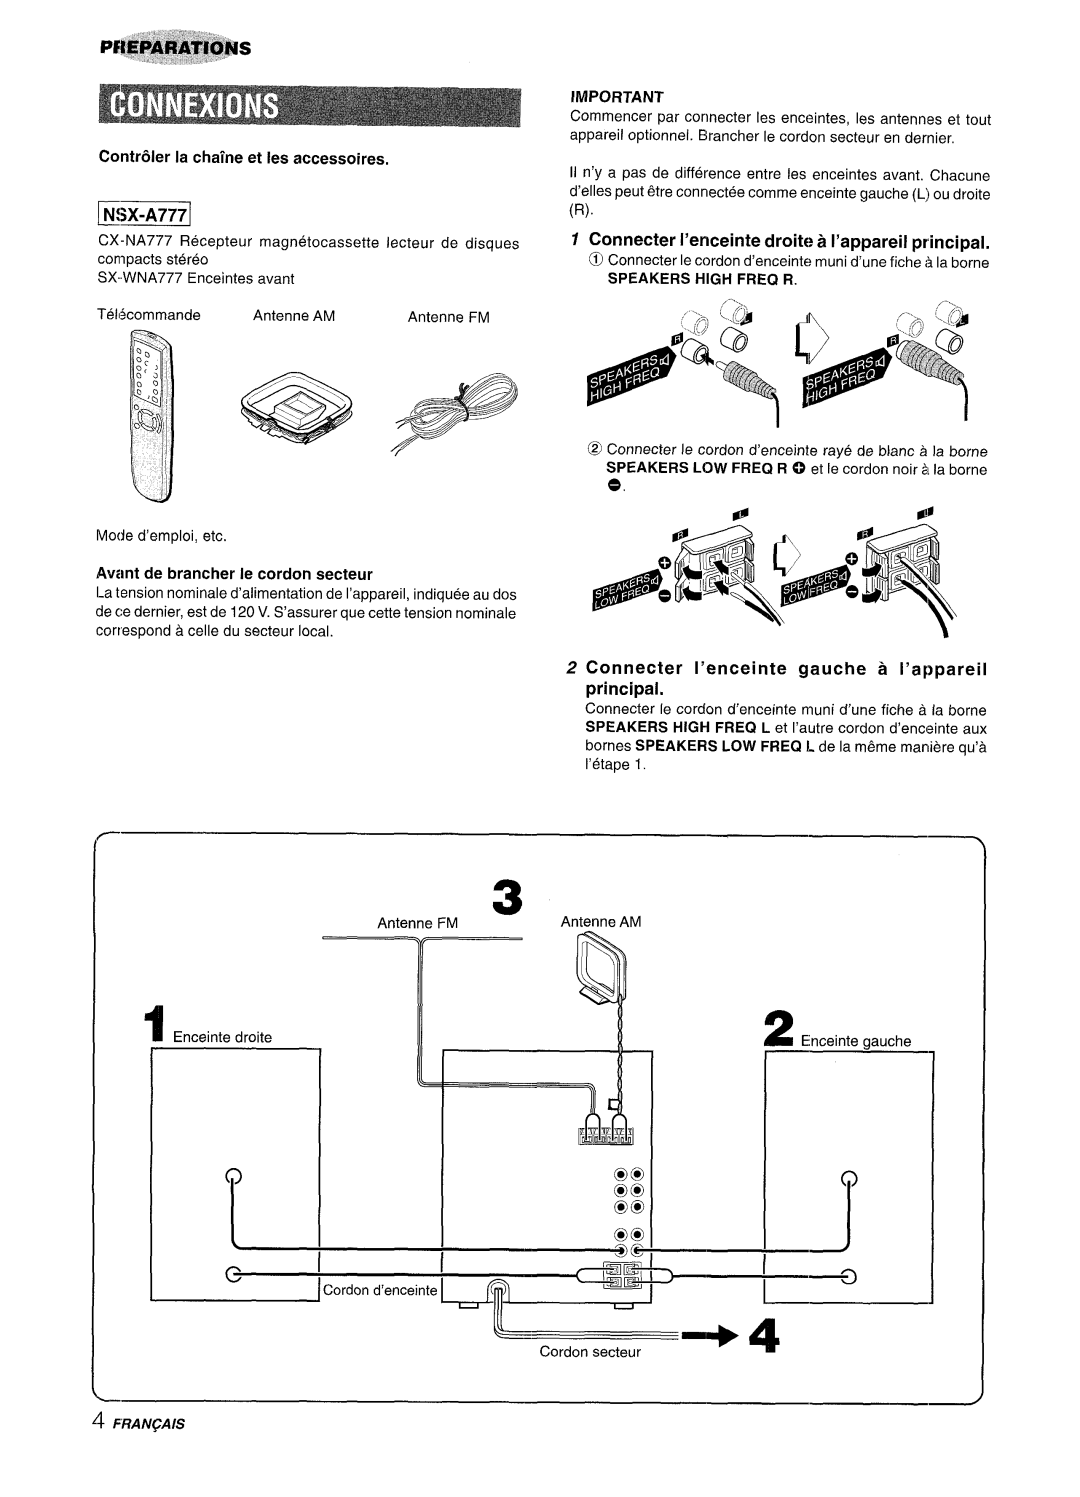 Sony NSX-A777 manual j N!X-A7771, Contr61er la chalne et Ies accessoires, Avant de brancher Ie cordon secteur 